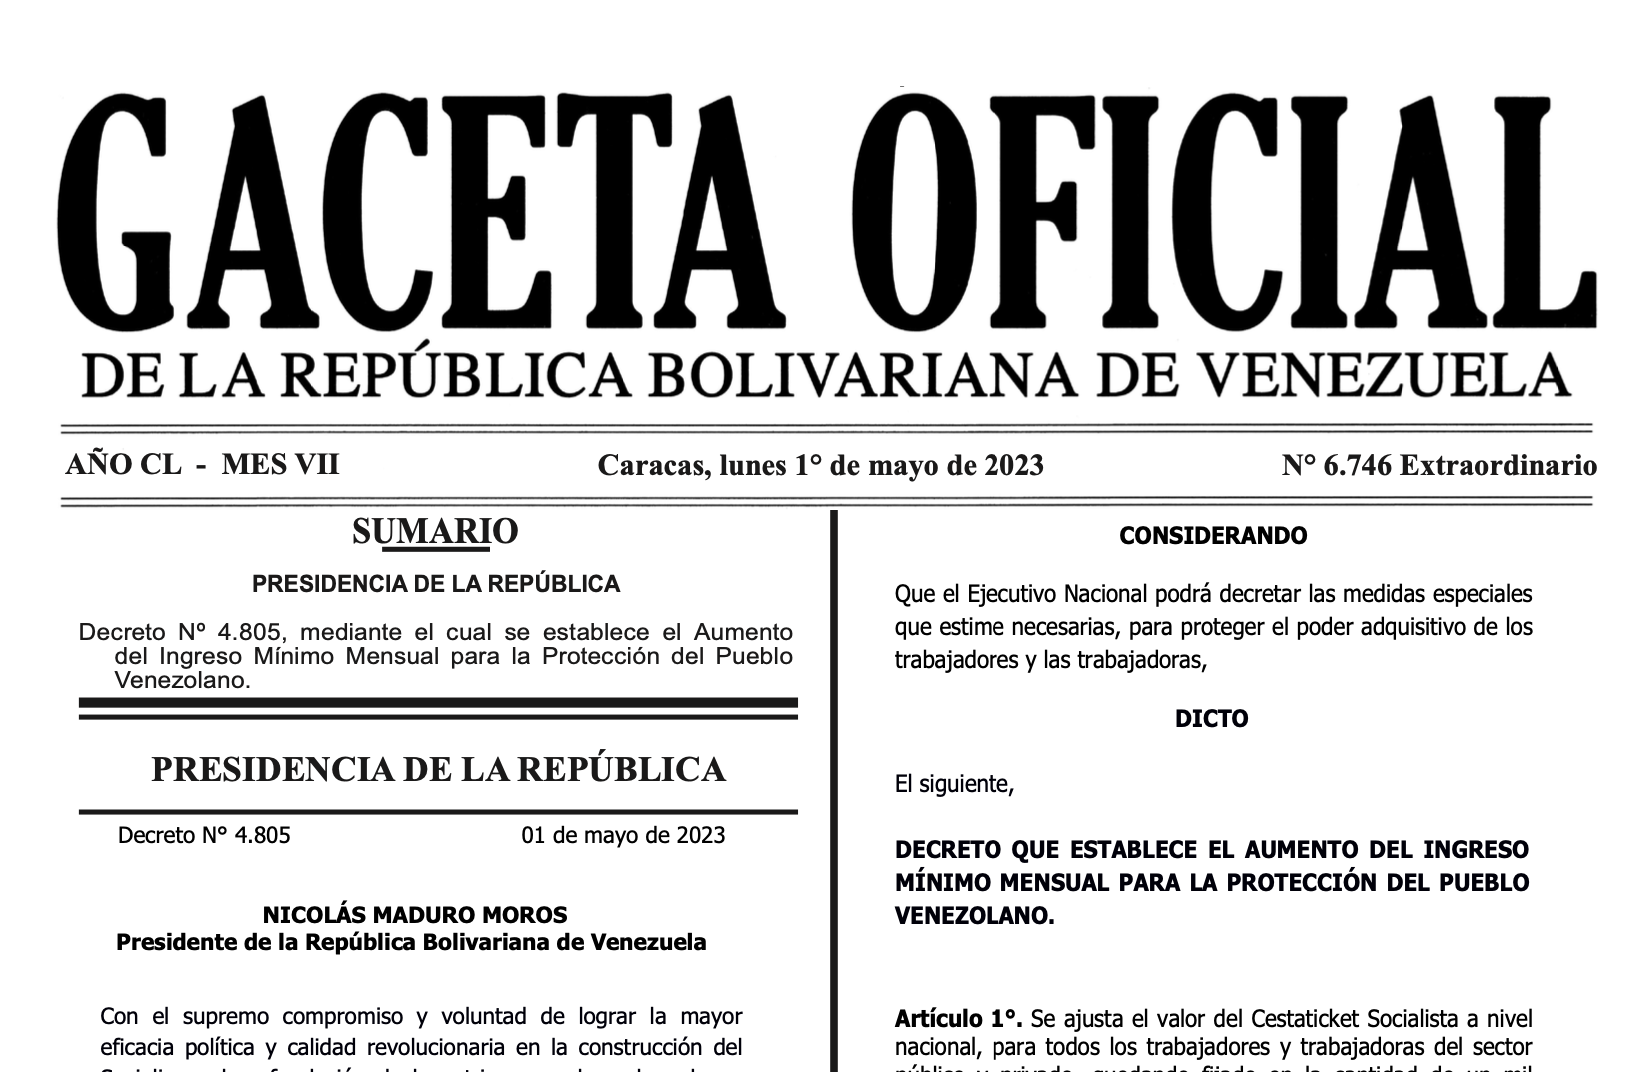 Las cifras se expresaron en Bolívares y serán ajustadas mensualmente